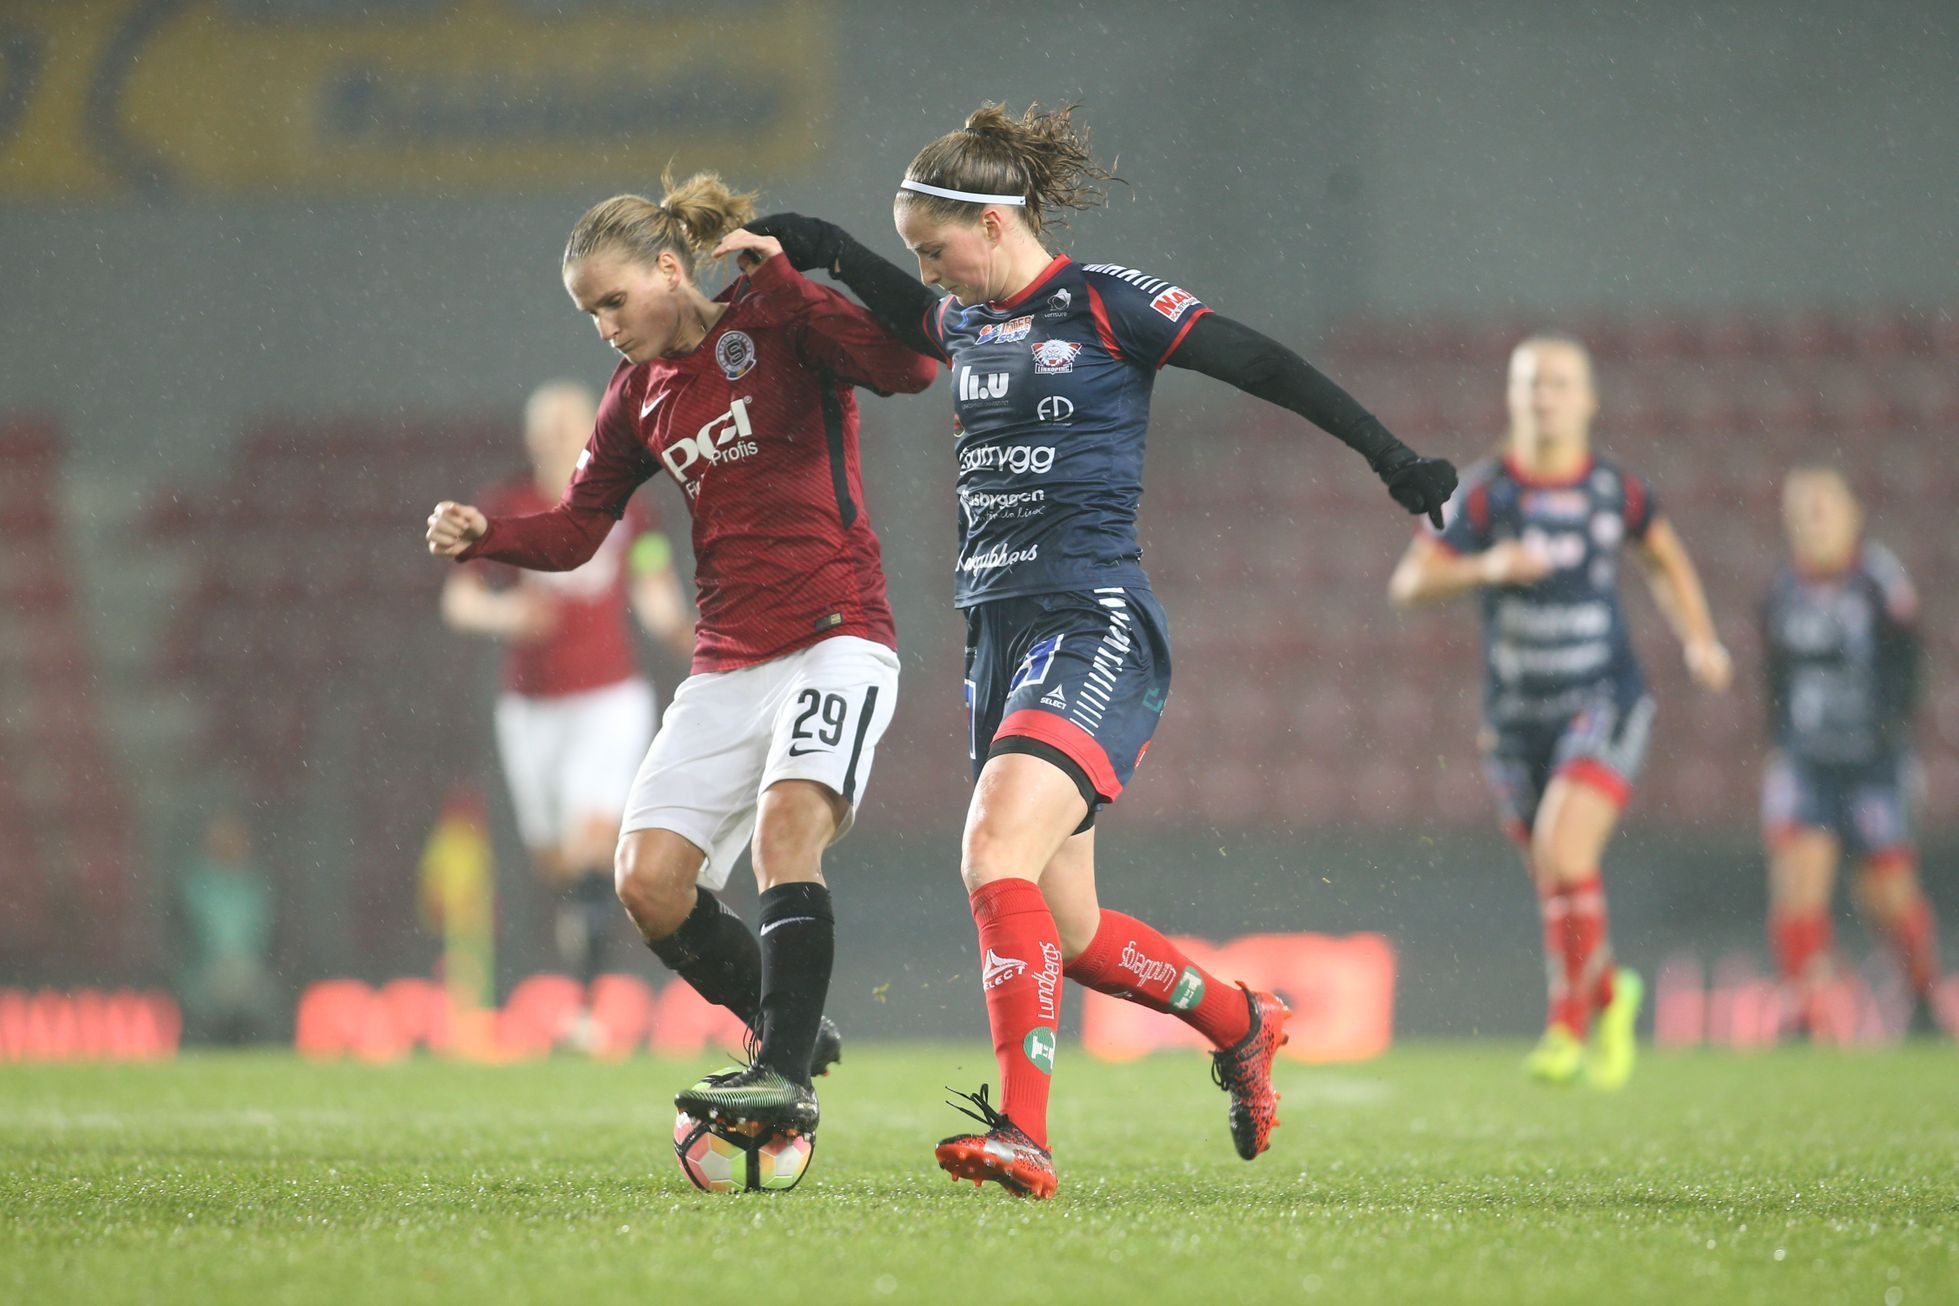 Ligy mistryň 2017/18: Sparta - Linköping, osmifinále